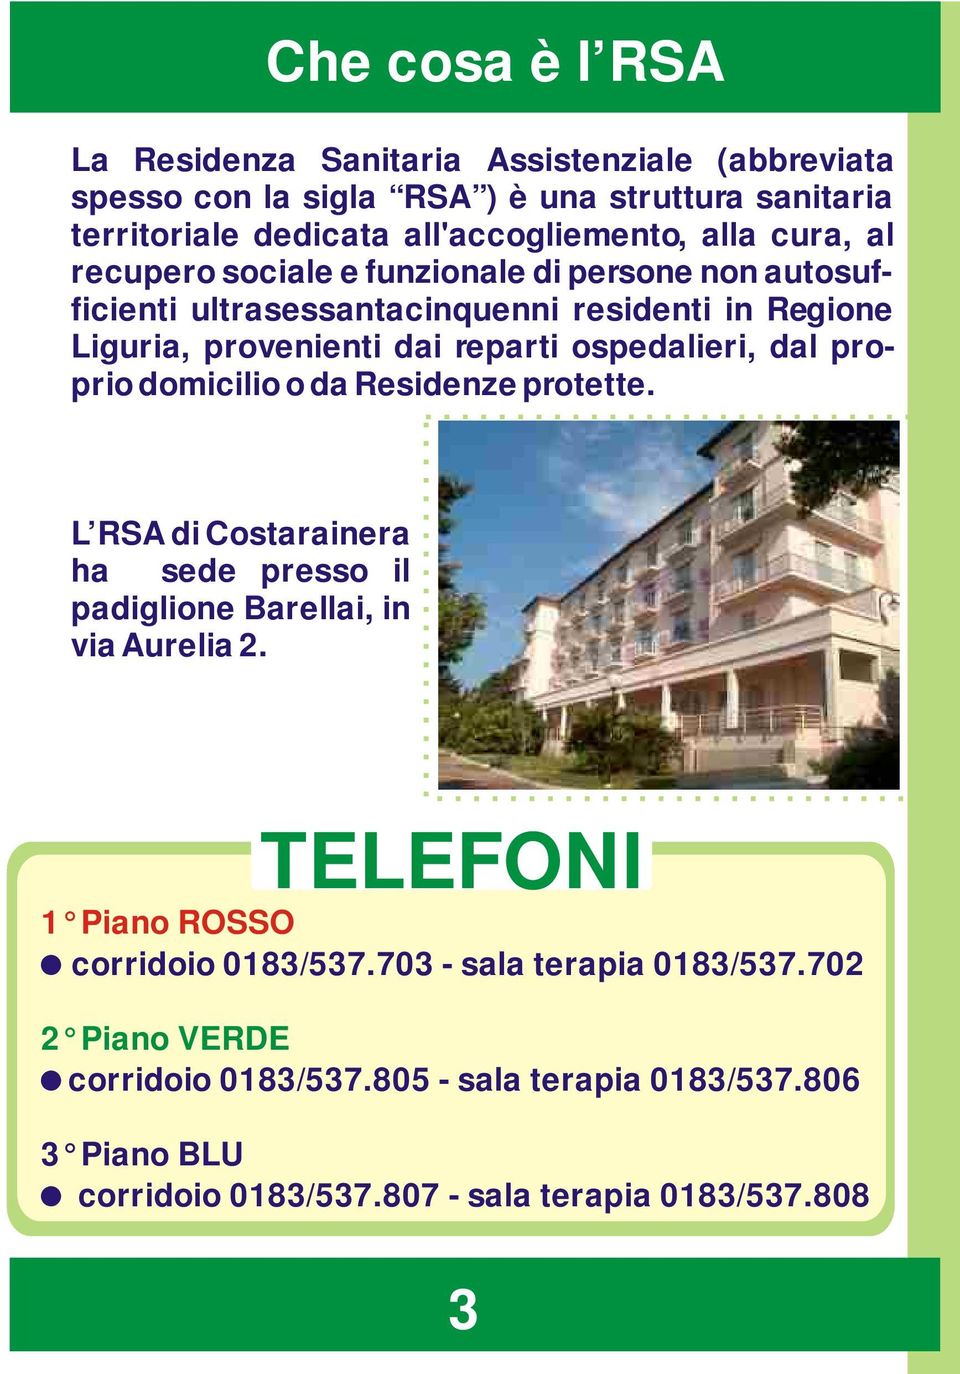 proprio domicilio o da Residenze protette. L RSA di Costarainera ha sede presso il padiglione Barellai, in via Aurelia 2. TELEFONI 1 Piano ROSSO!